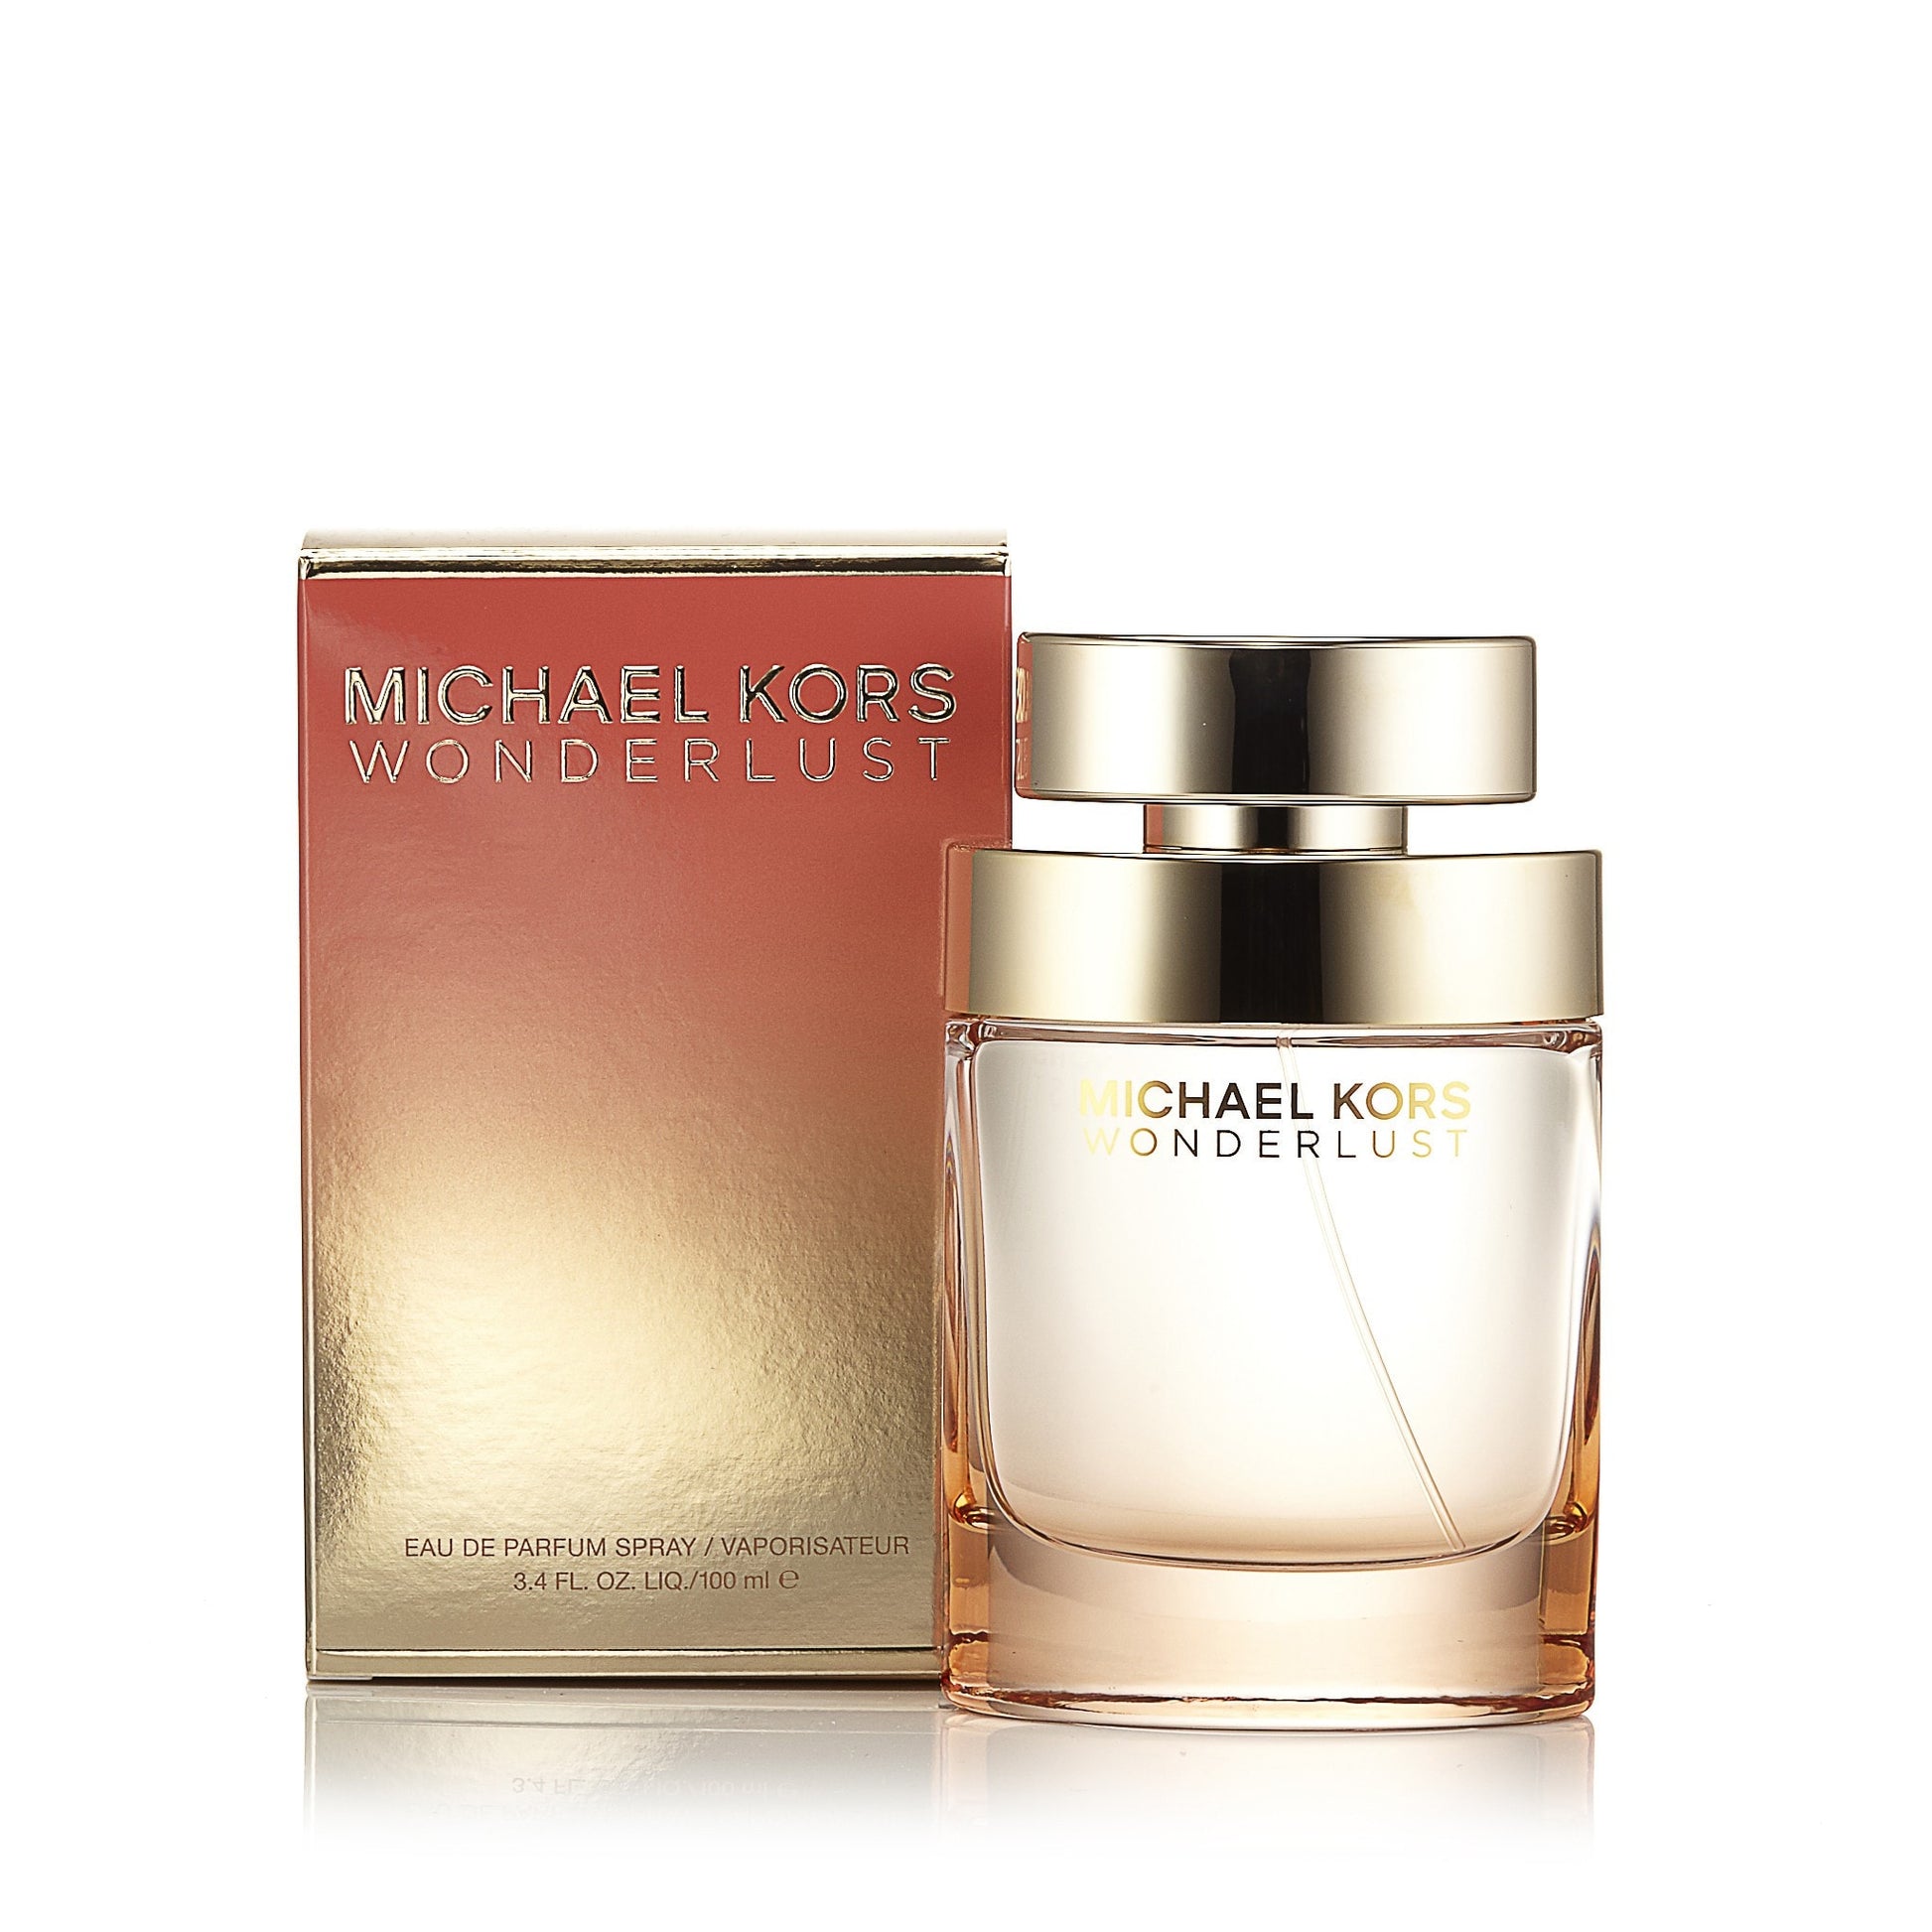 Wonderlust Eau de Parfum Spray for Women by Michael Kors, Product image 1